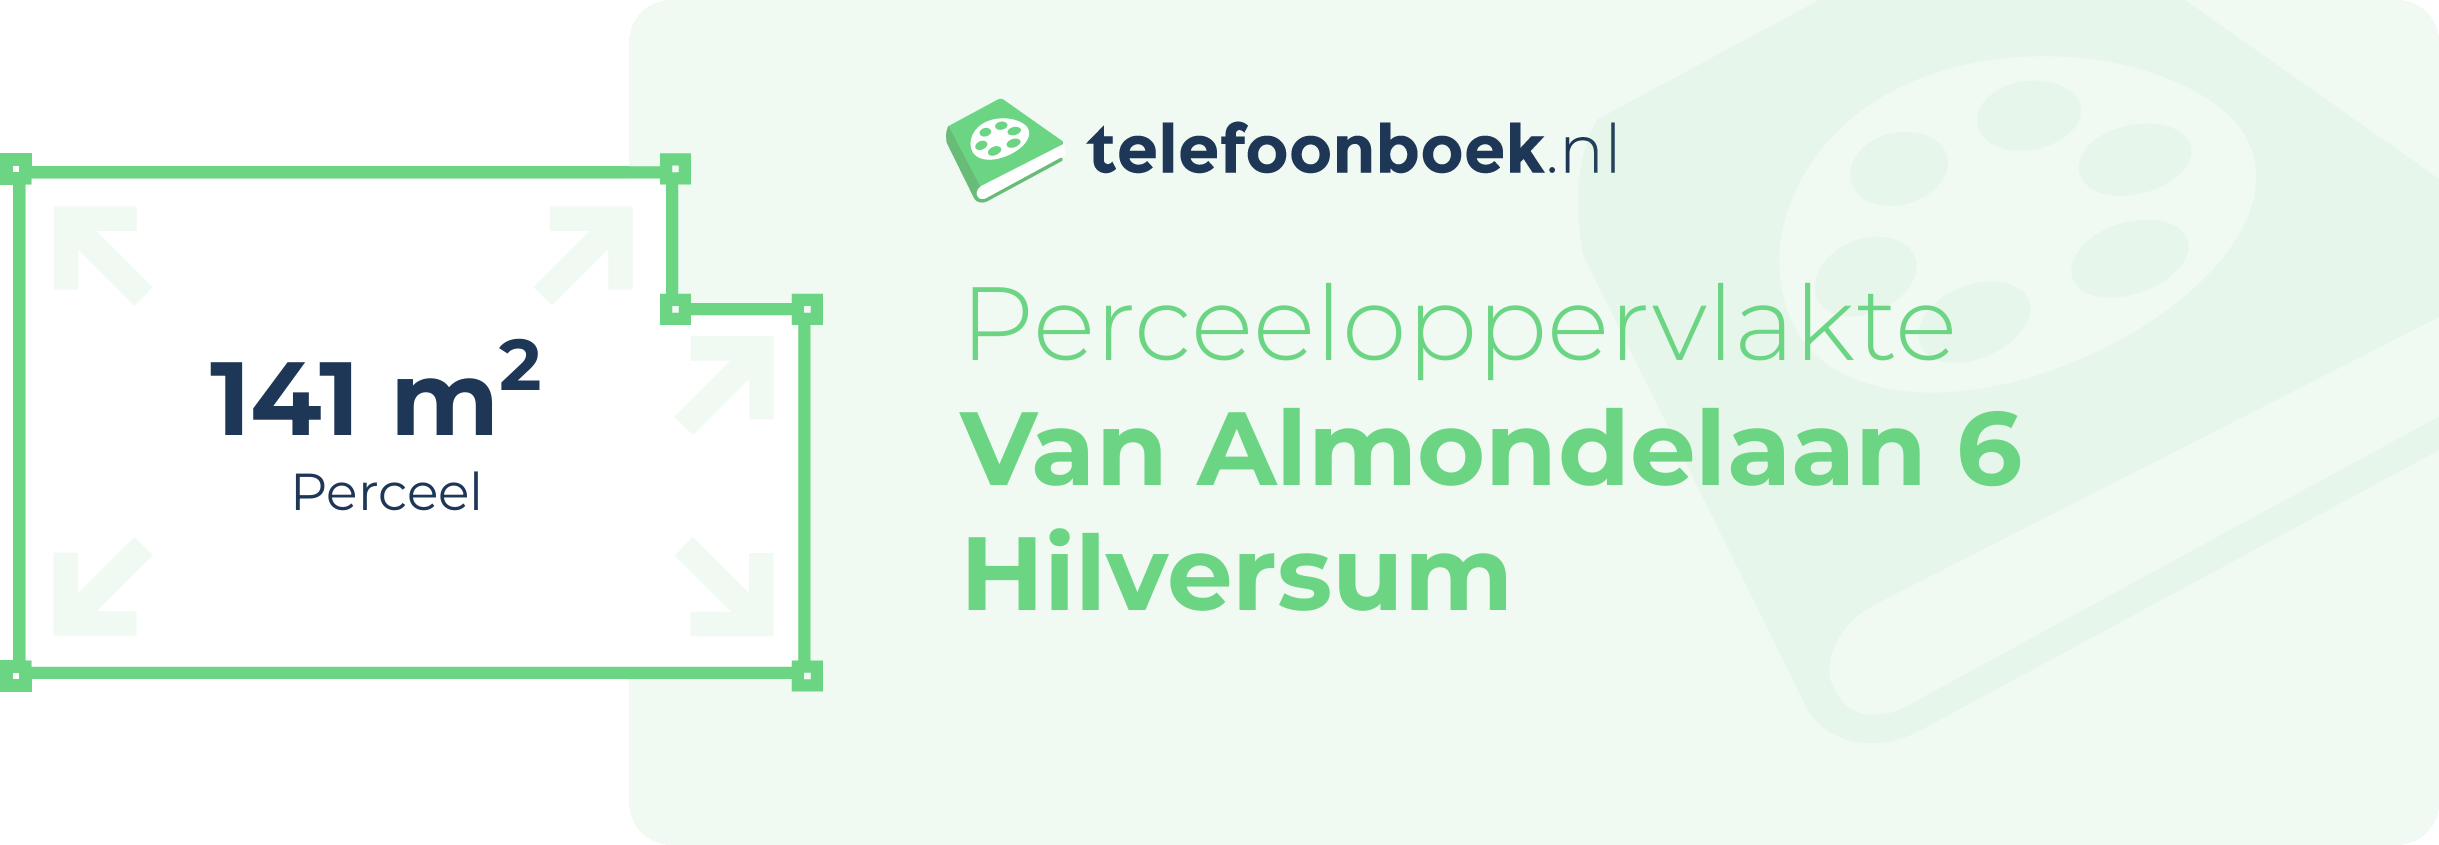 Perceeloppervlakte Van Almondelaan 6 Hilversum